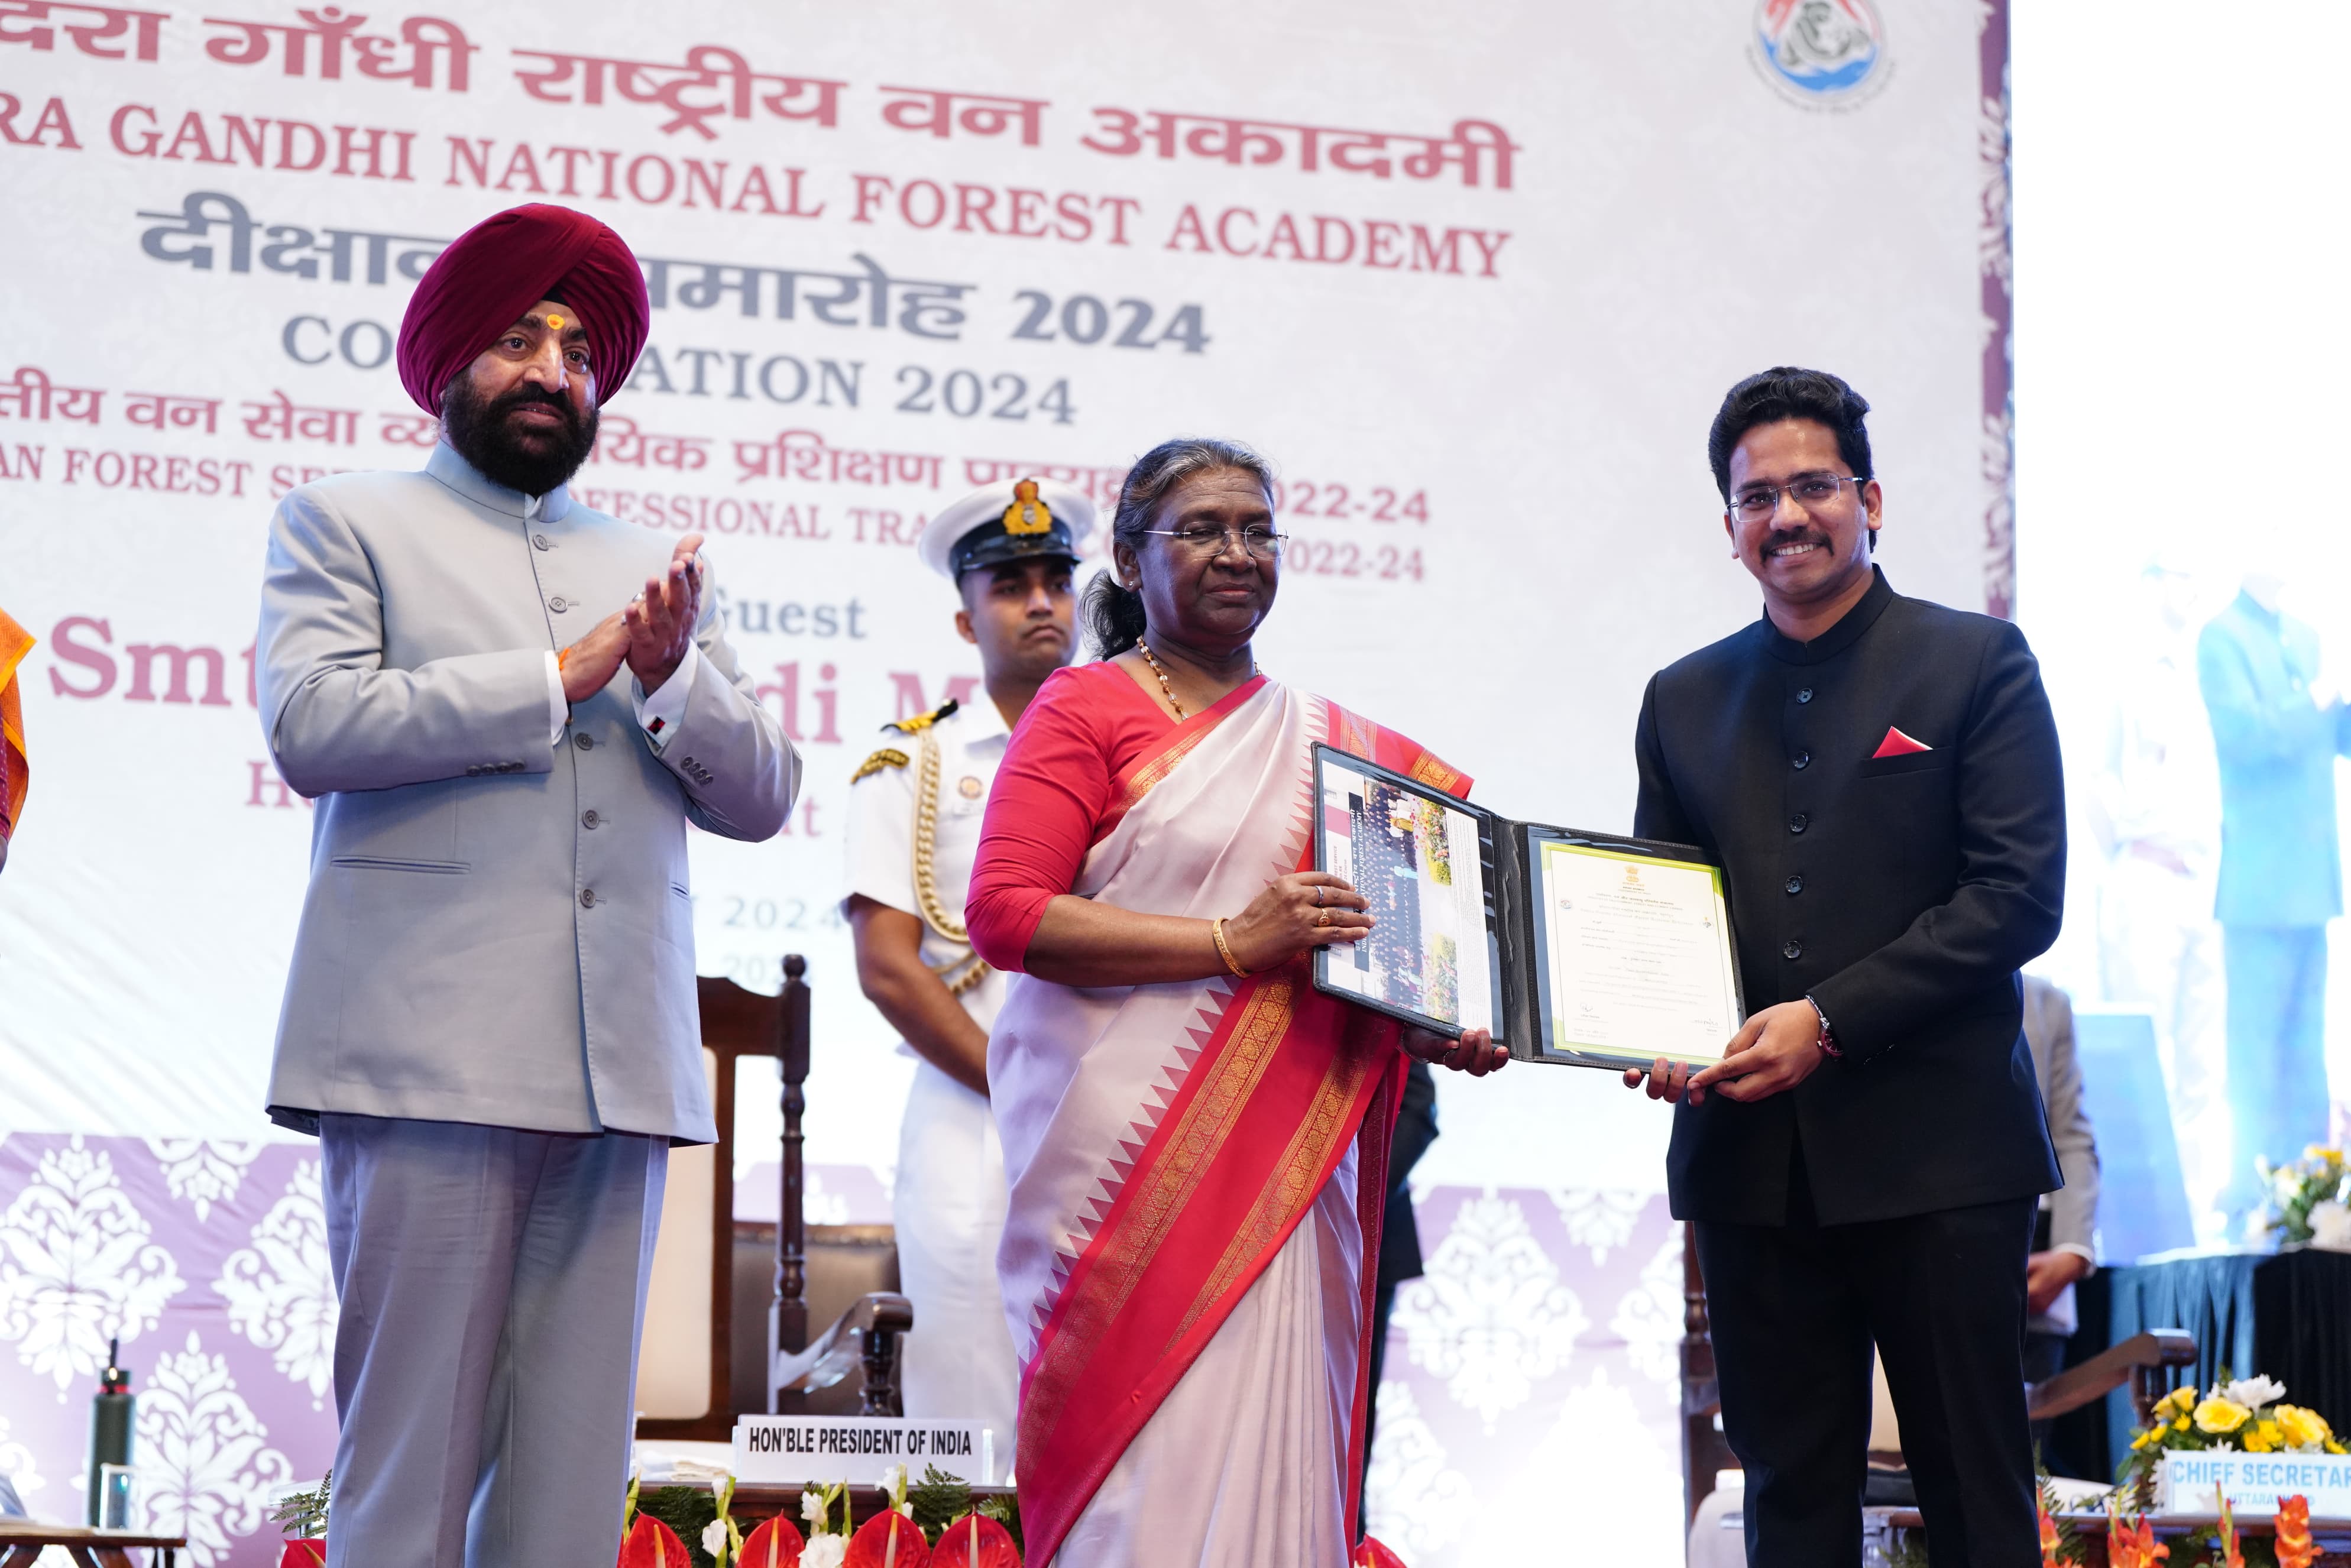 राष्ट्रपति ने भारतीय वन सेवा के परिवीक्षार्थियों को बांटे प्रमाण पत्र और पदक